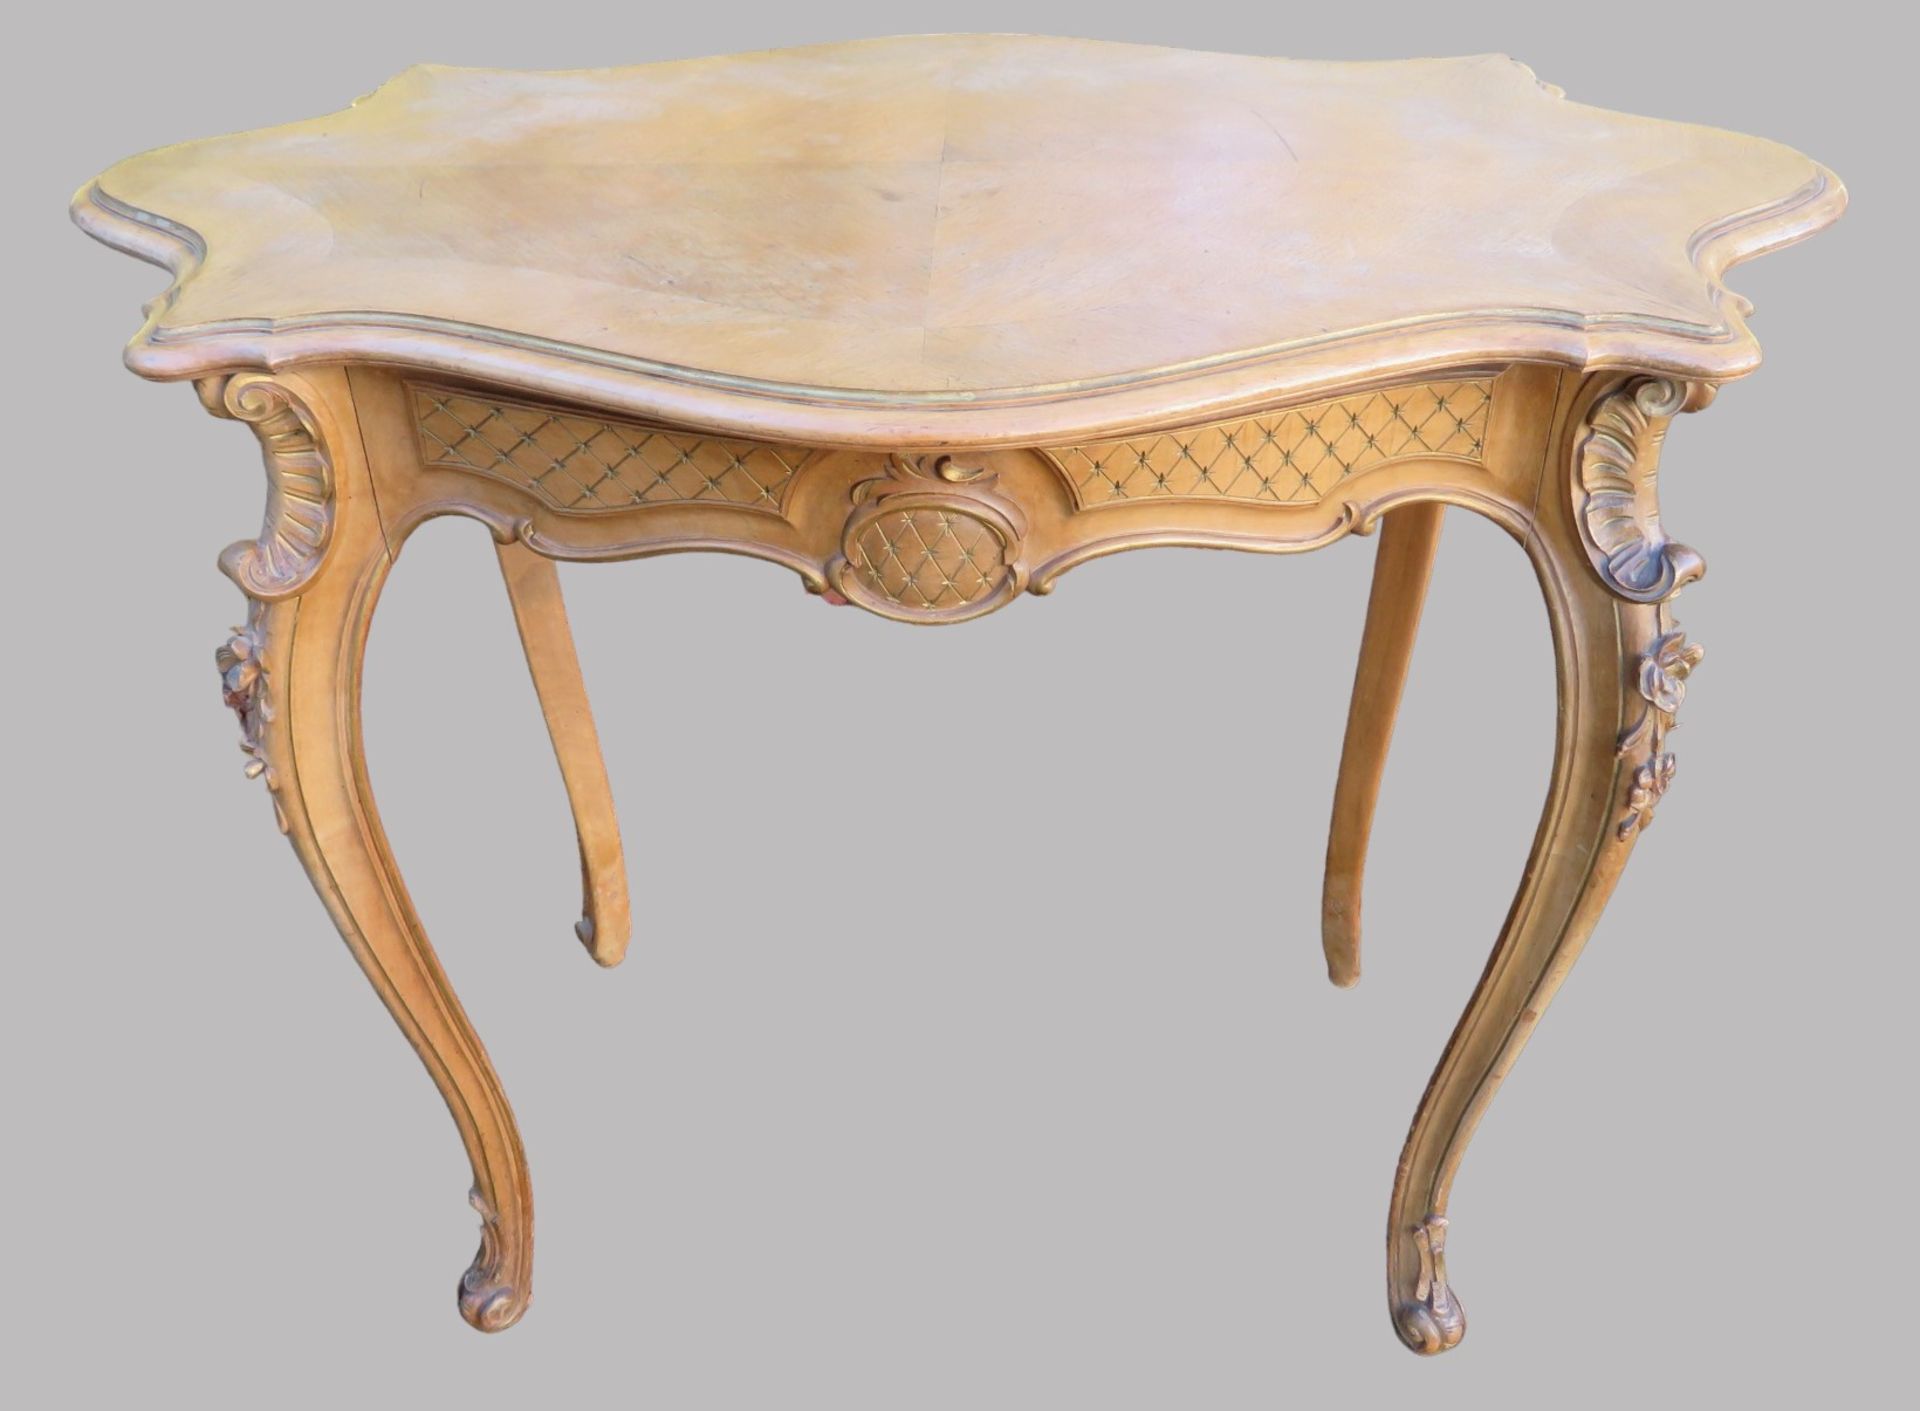 Tisch, Rokokostil, 19. Jahrhundert, Nussbaum beschnitzt, rest.bed., 74 x 90 x 54 cm.